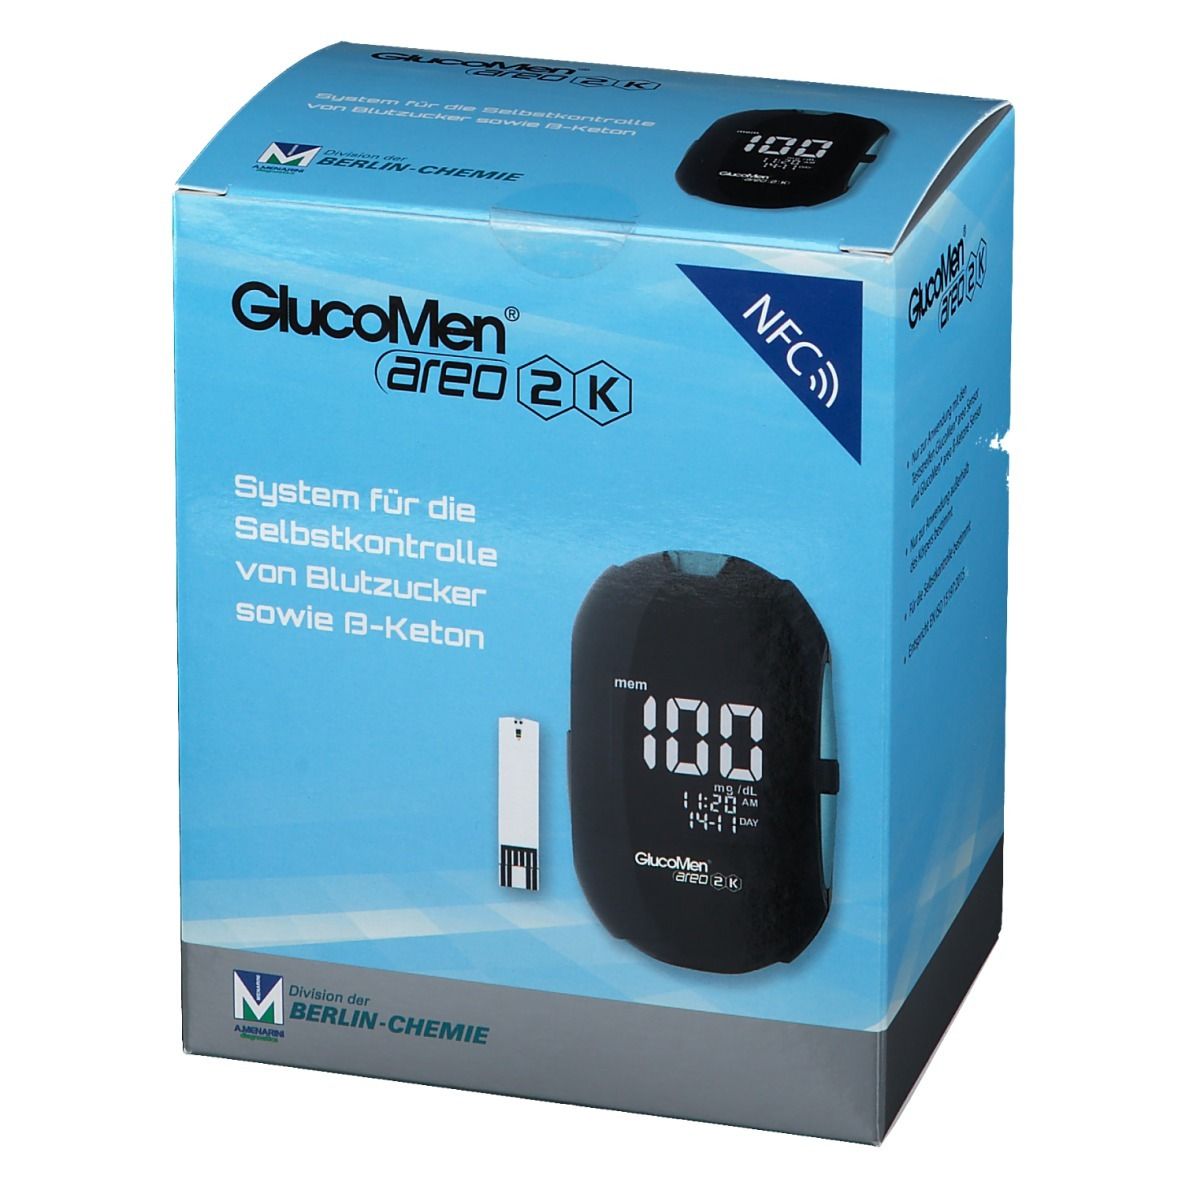 GlucoMen® areo 2K Blutzucker Set mg/dl